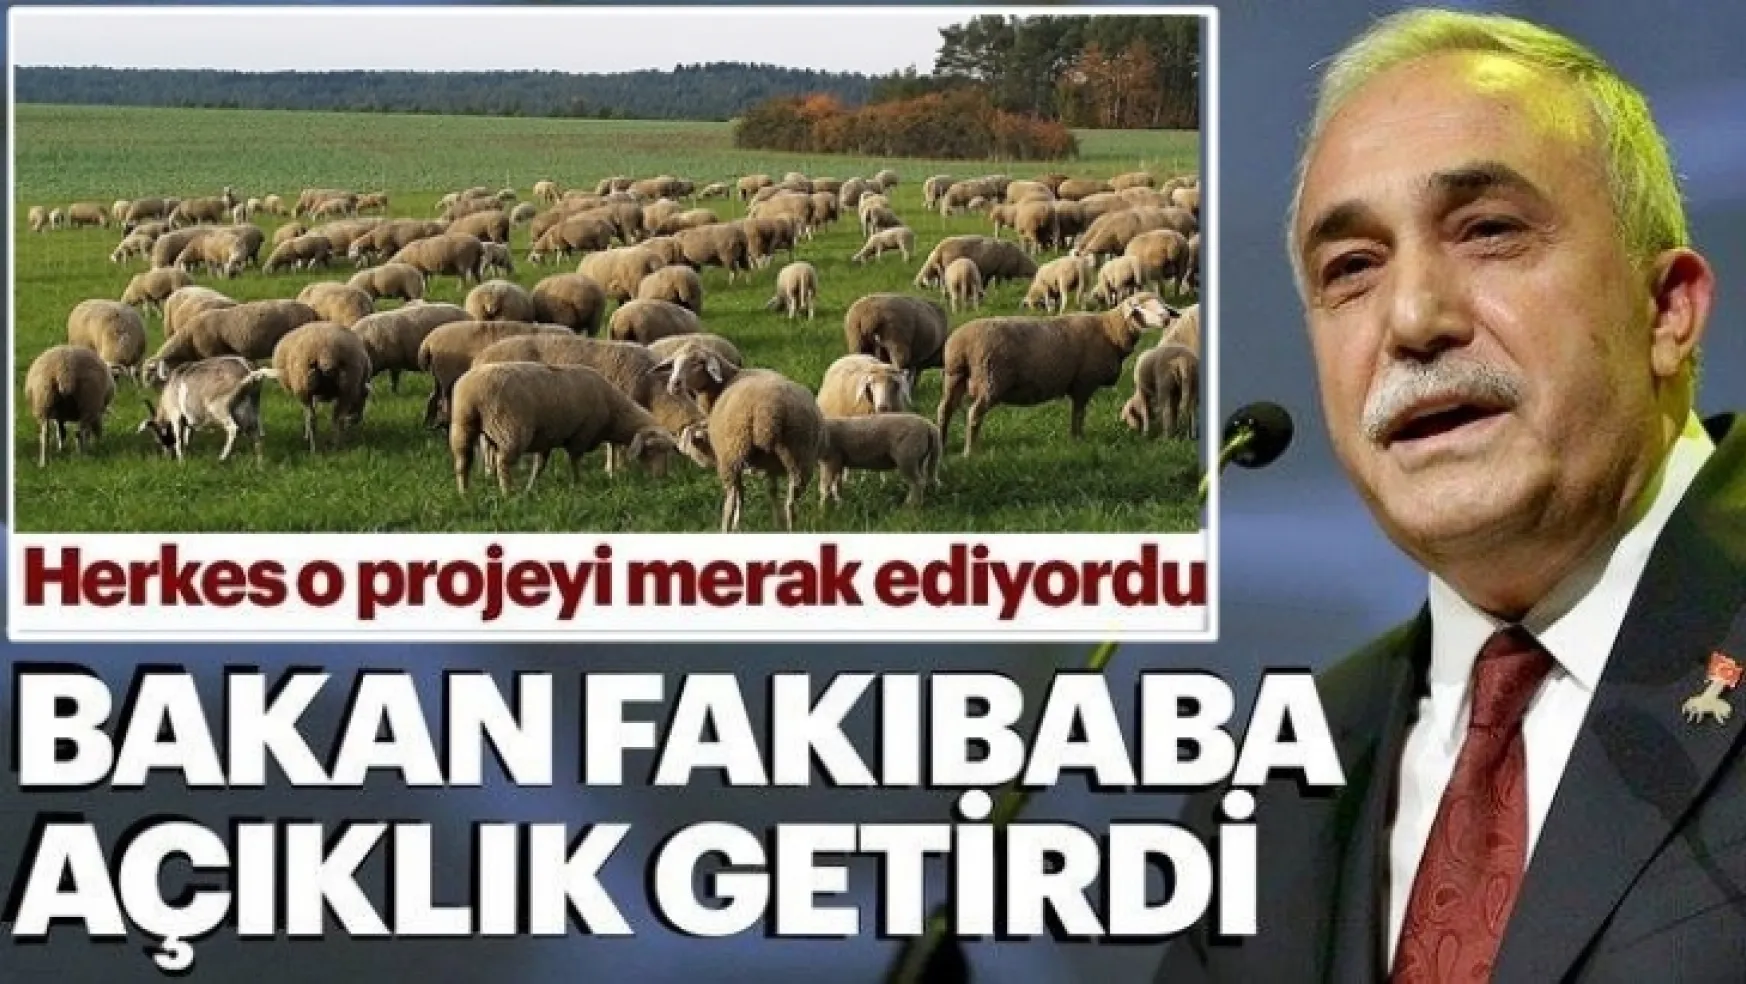 Bakan Fakıbaba '300 koyun' projesine açıklık getirdi